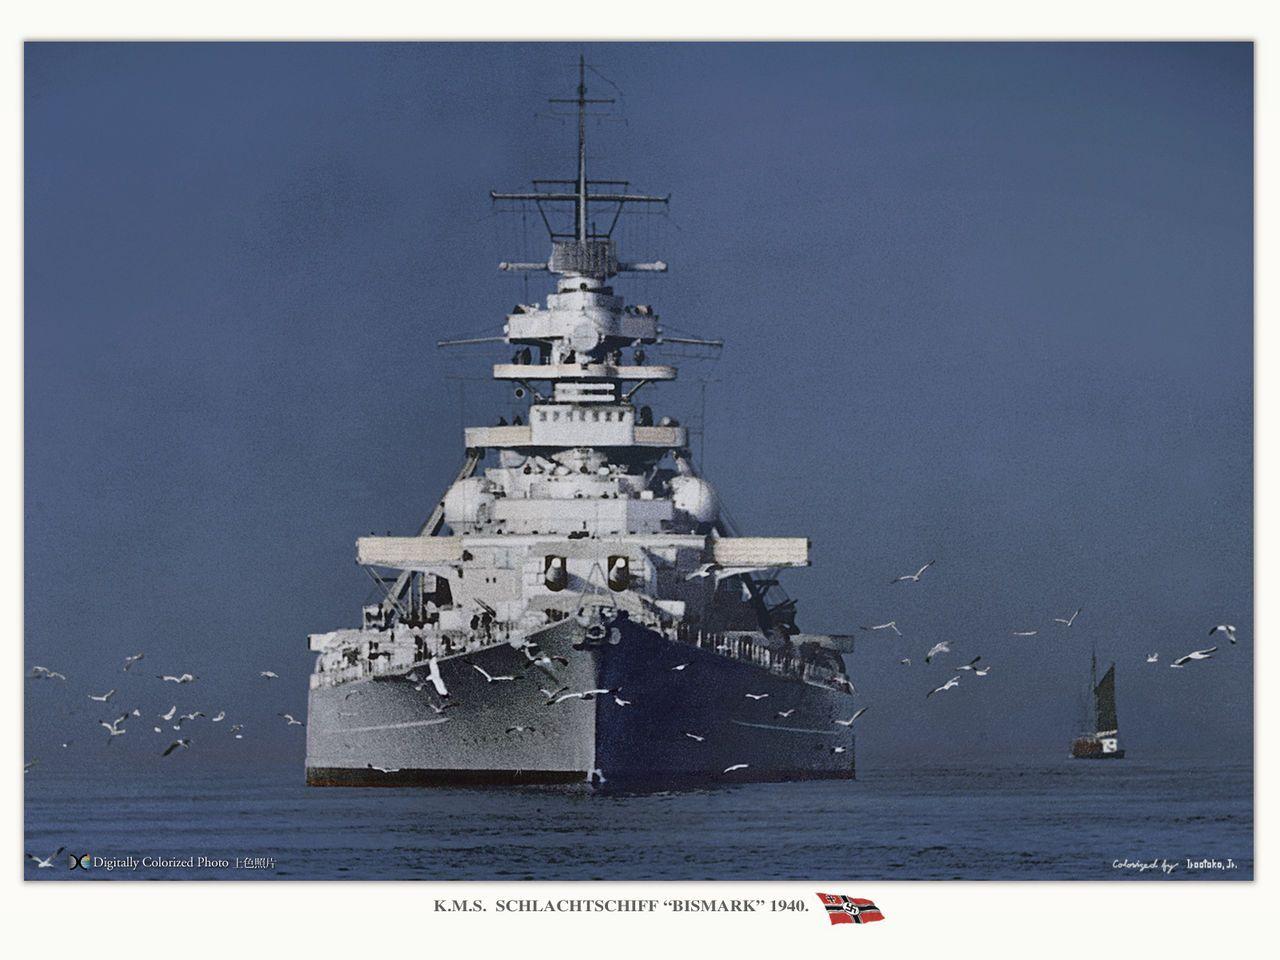 Color Pics of Bismarck & Tirpitz (Image heavy)